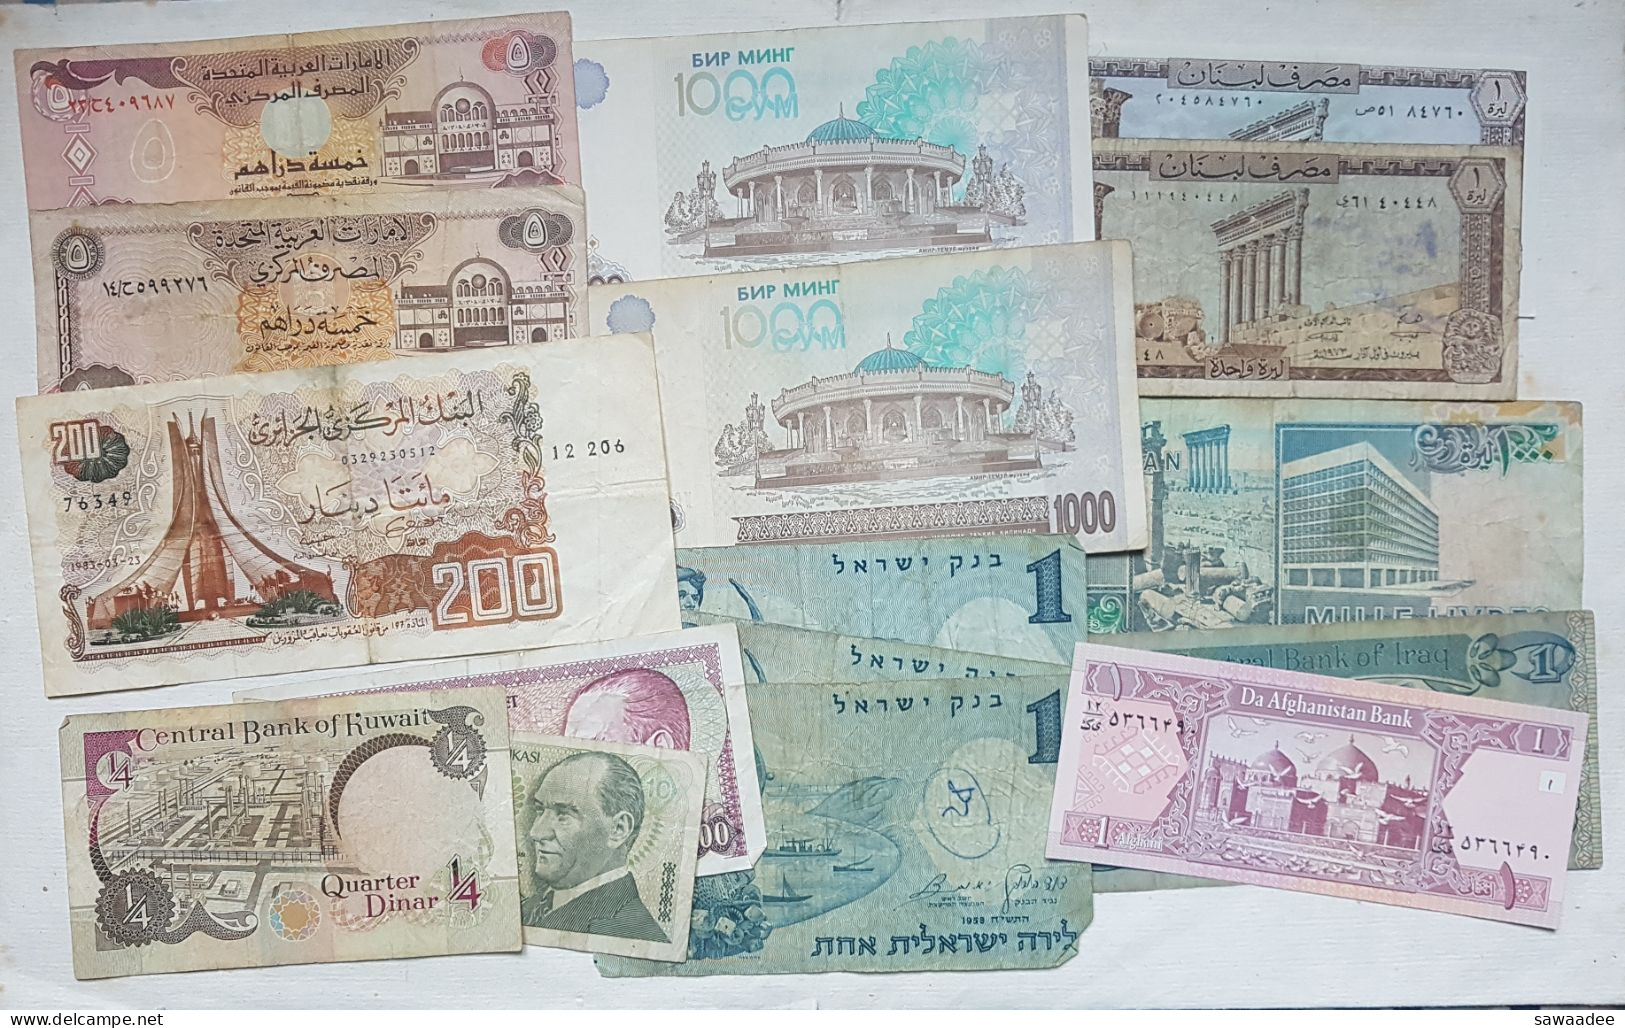 BILLETS MOYEN ORIENT / ASIE CENTRALE - VRAC LOT DE 16 BILLETS - ISRAEL - KOWAIT - IRAK - LIBAN - OUZBEKISTAN - A VOIR - Lots & Kiloware - Banknotes